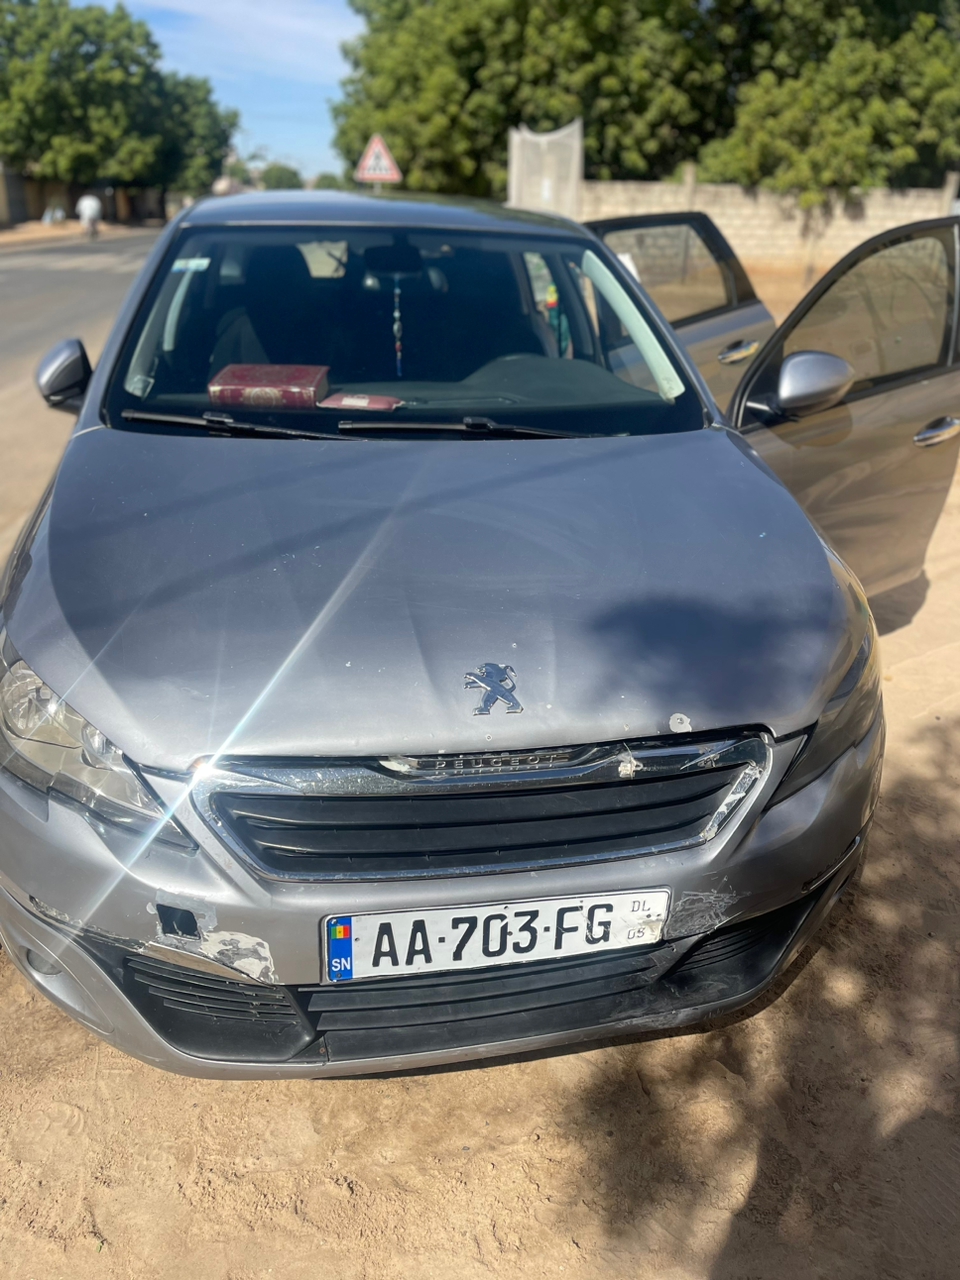 Peugeot 308 2015 diesel automatique faible consommation